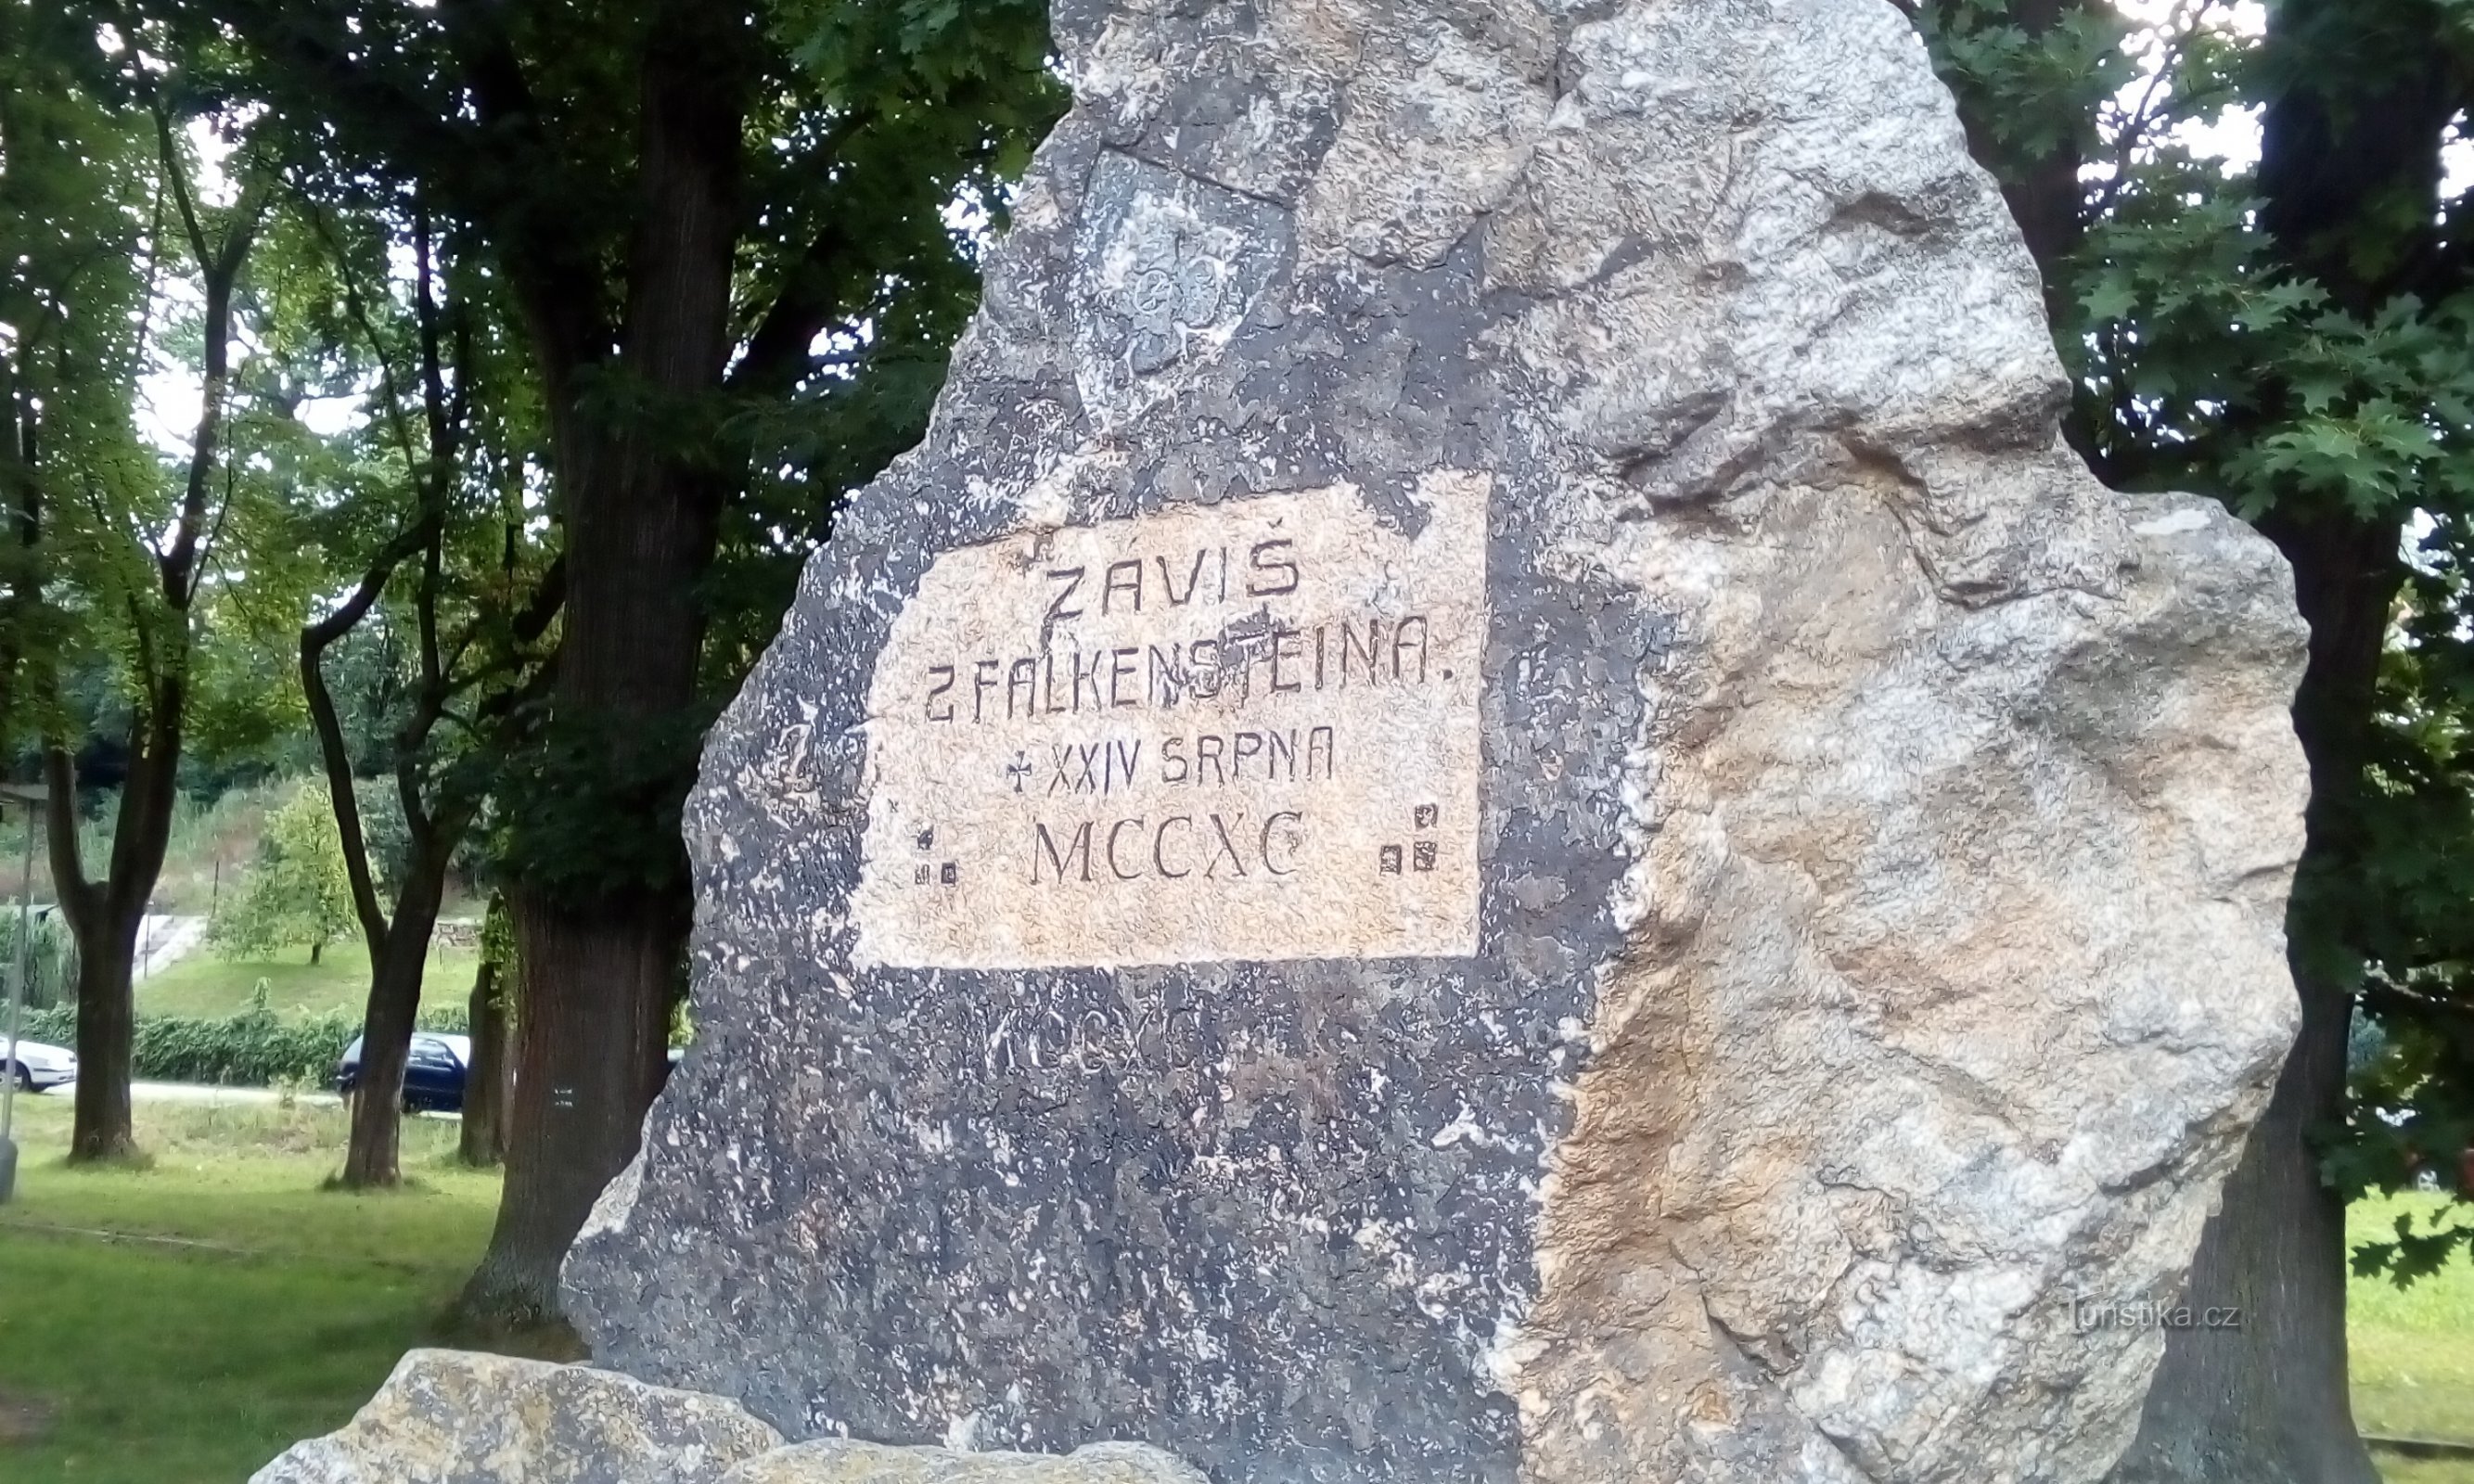 Pomnik Závisa z Falkenstein